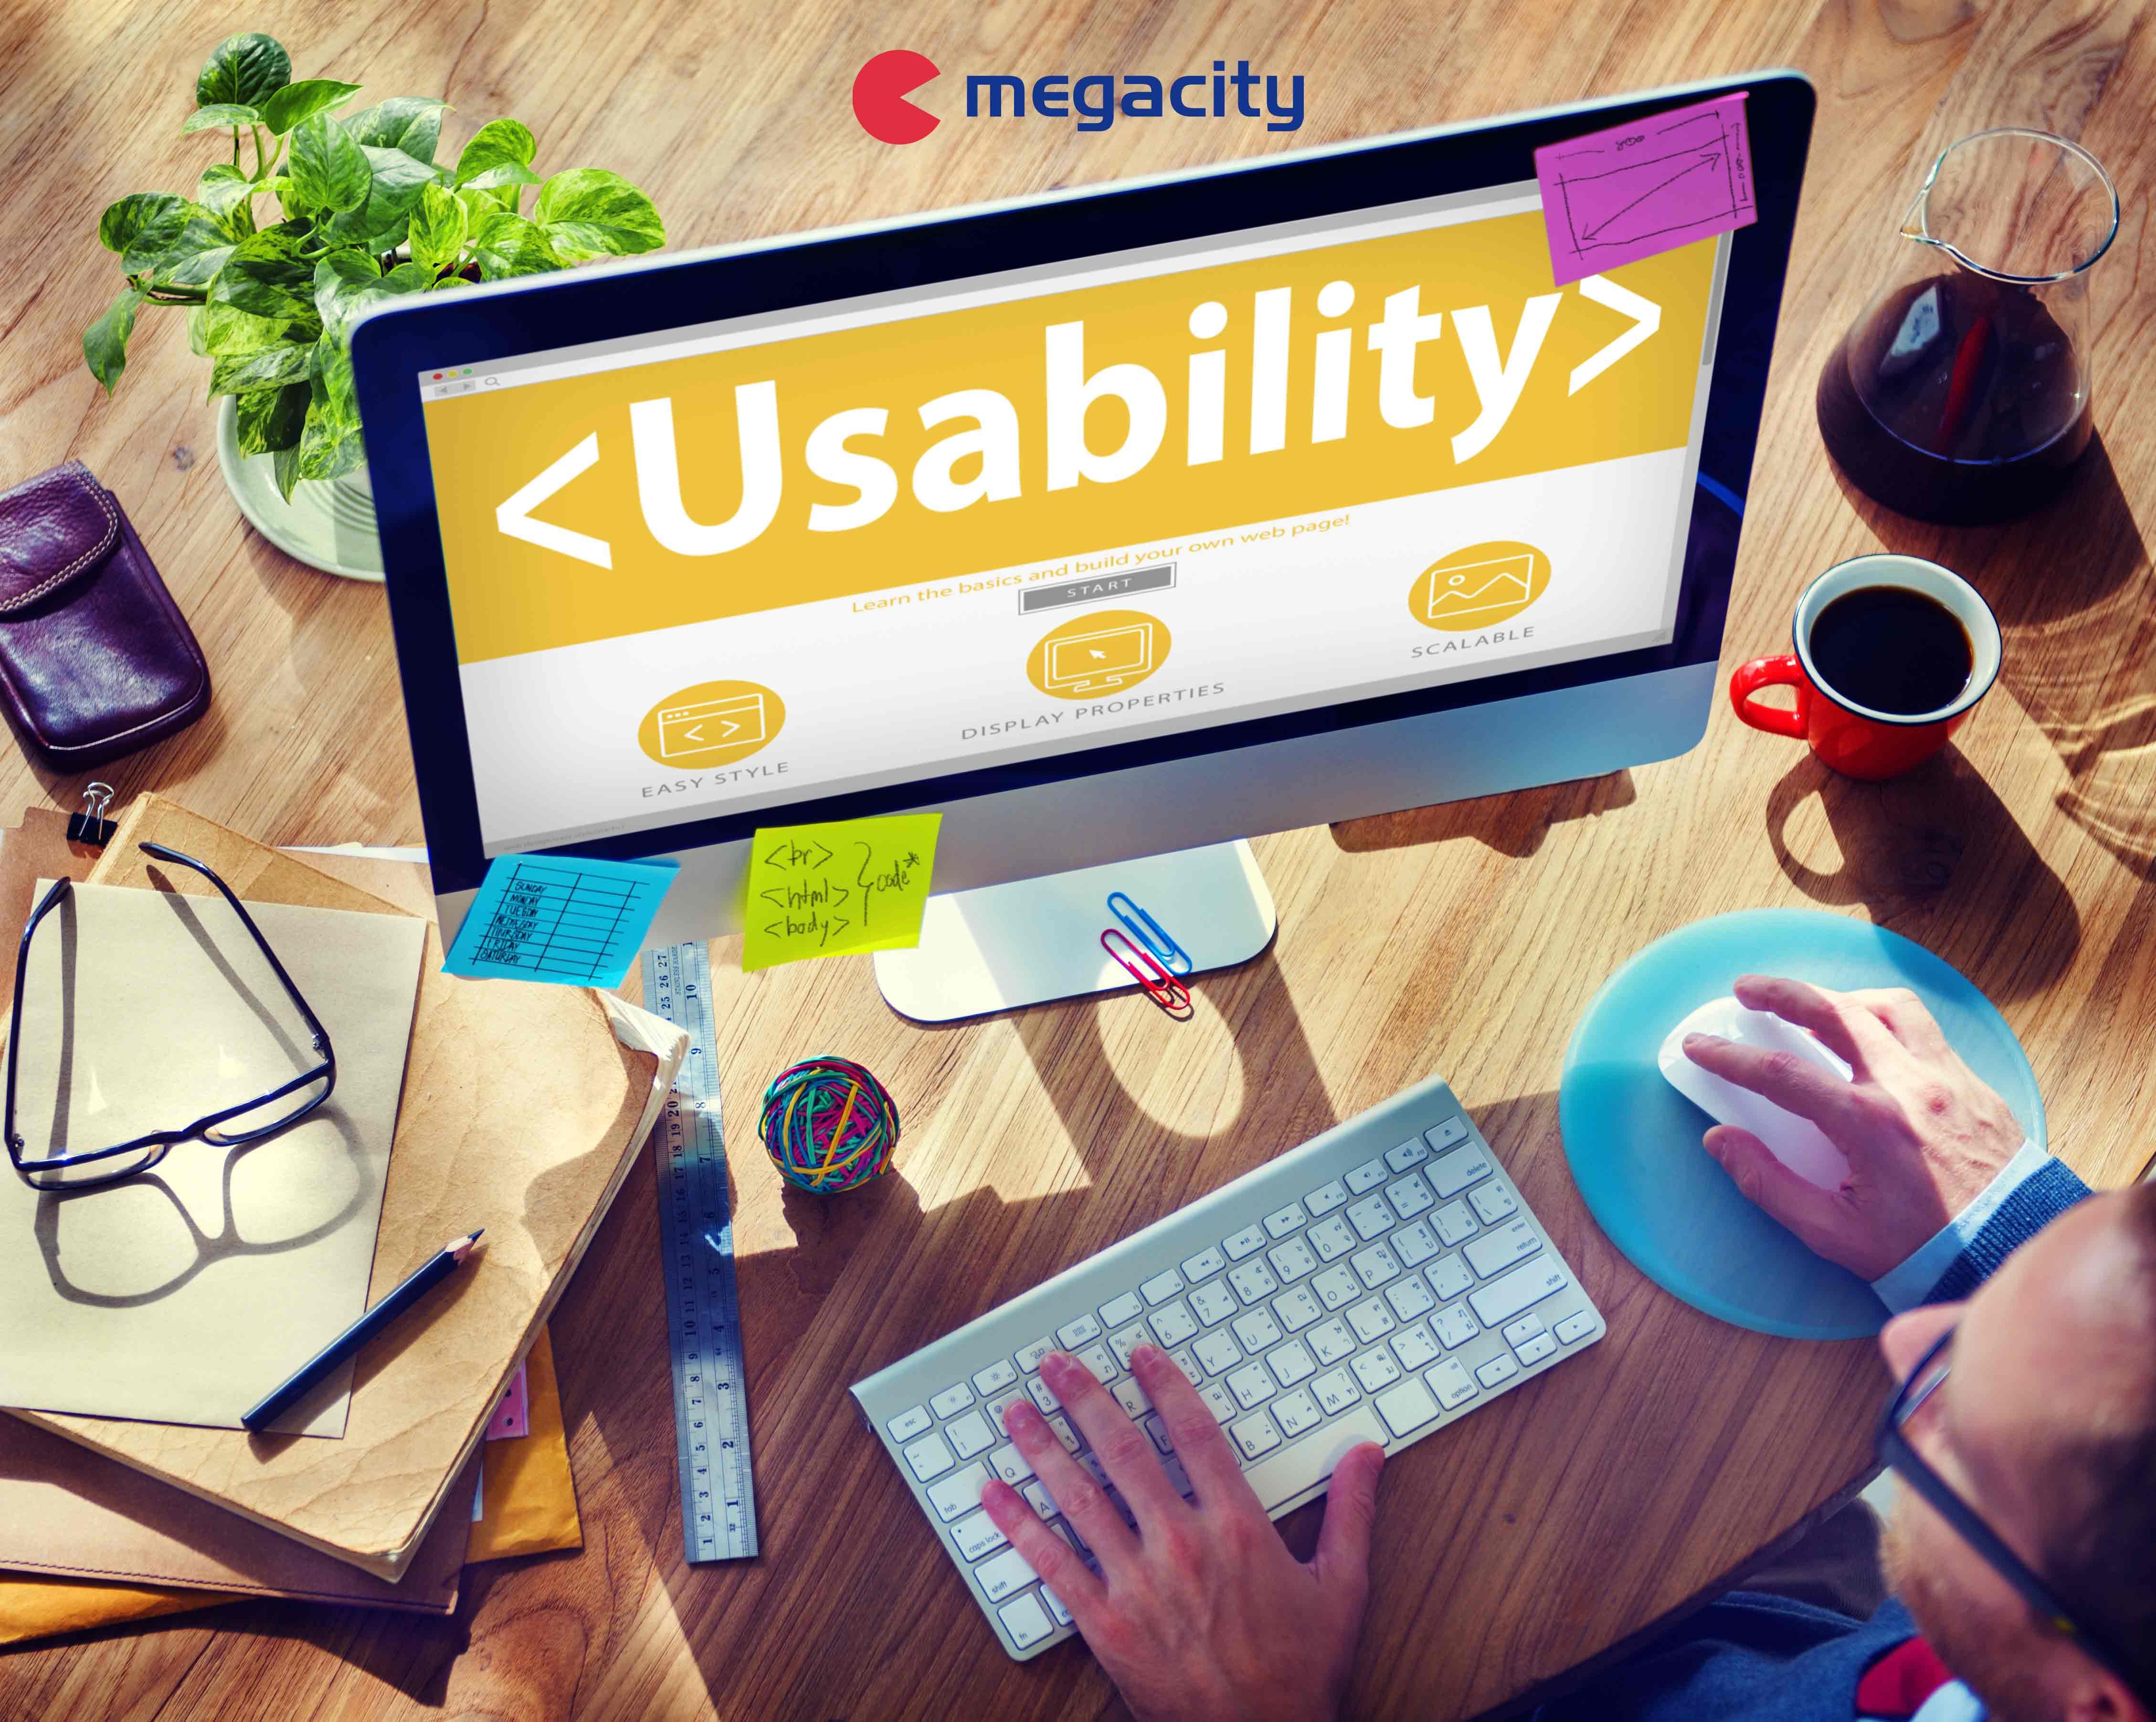 Megacity da las claves para cuidar el entorno de trabajo 